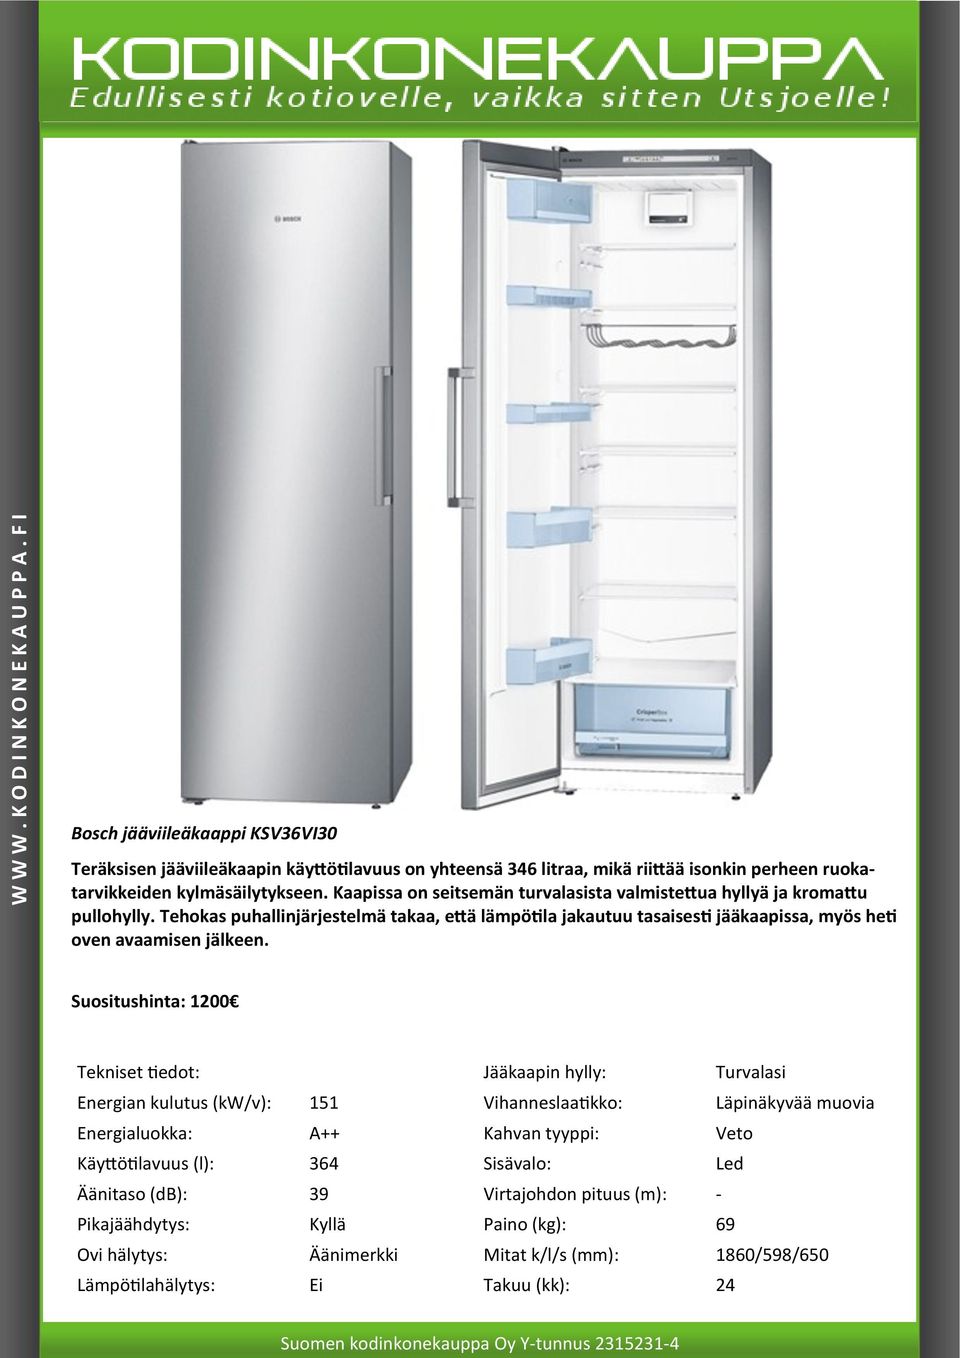 Tehokas puhallinjärjestelmä takaa, että lämpötila jakautuu tasaisesti jääkaapissa, myös heti oven avaamisen jälkeen.